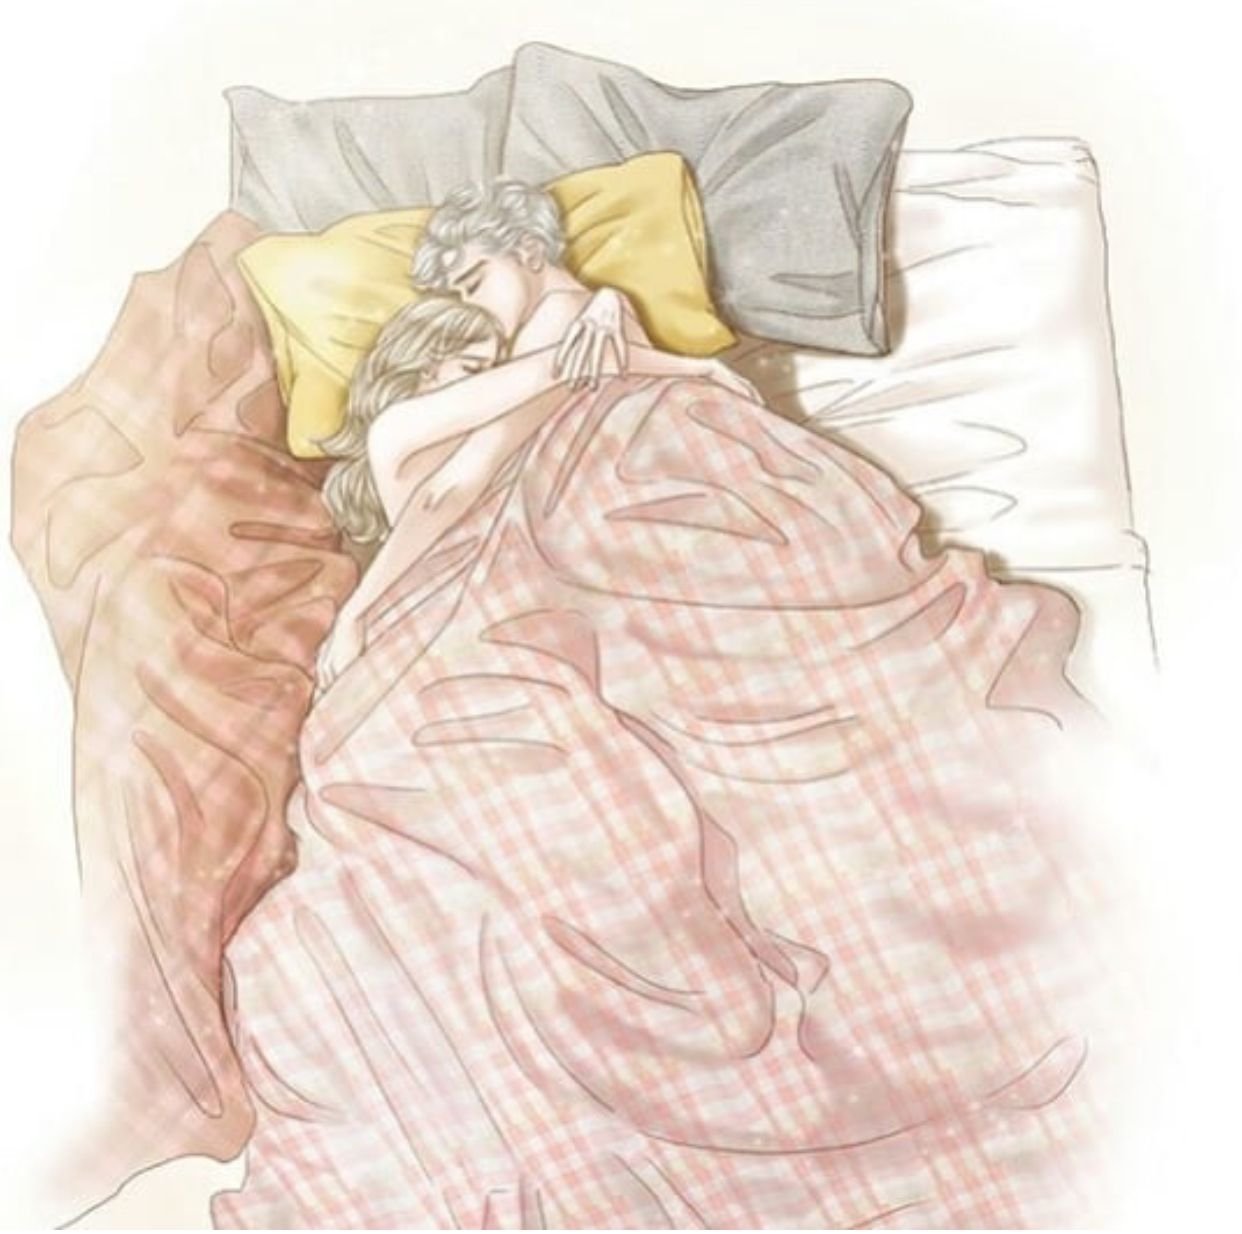 Идем спать любимая. Обнимает одеяло. Одеяло нарисованное. Под одеялом иллюстрация. Парочка под одеялом арт.